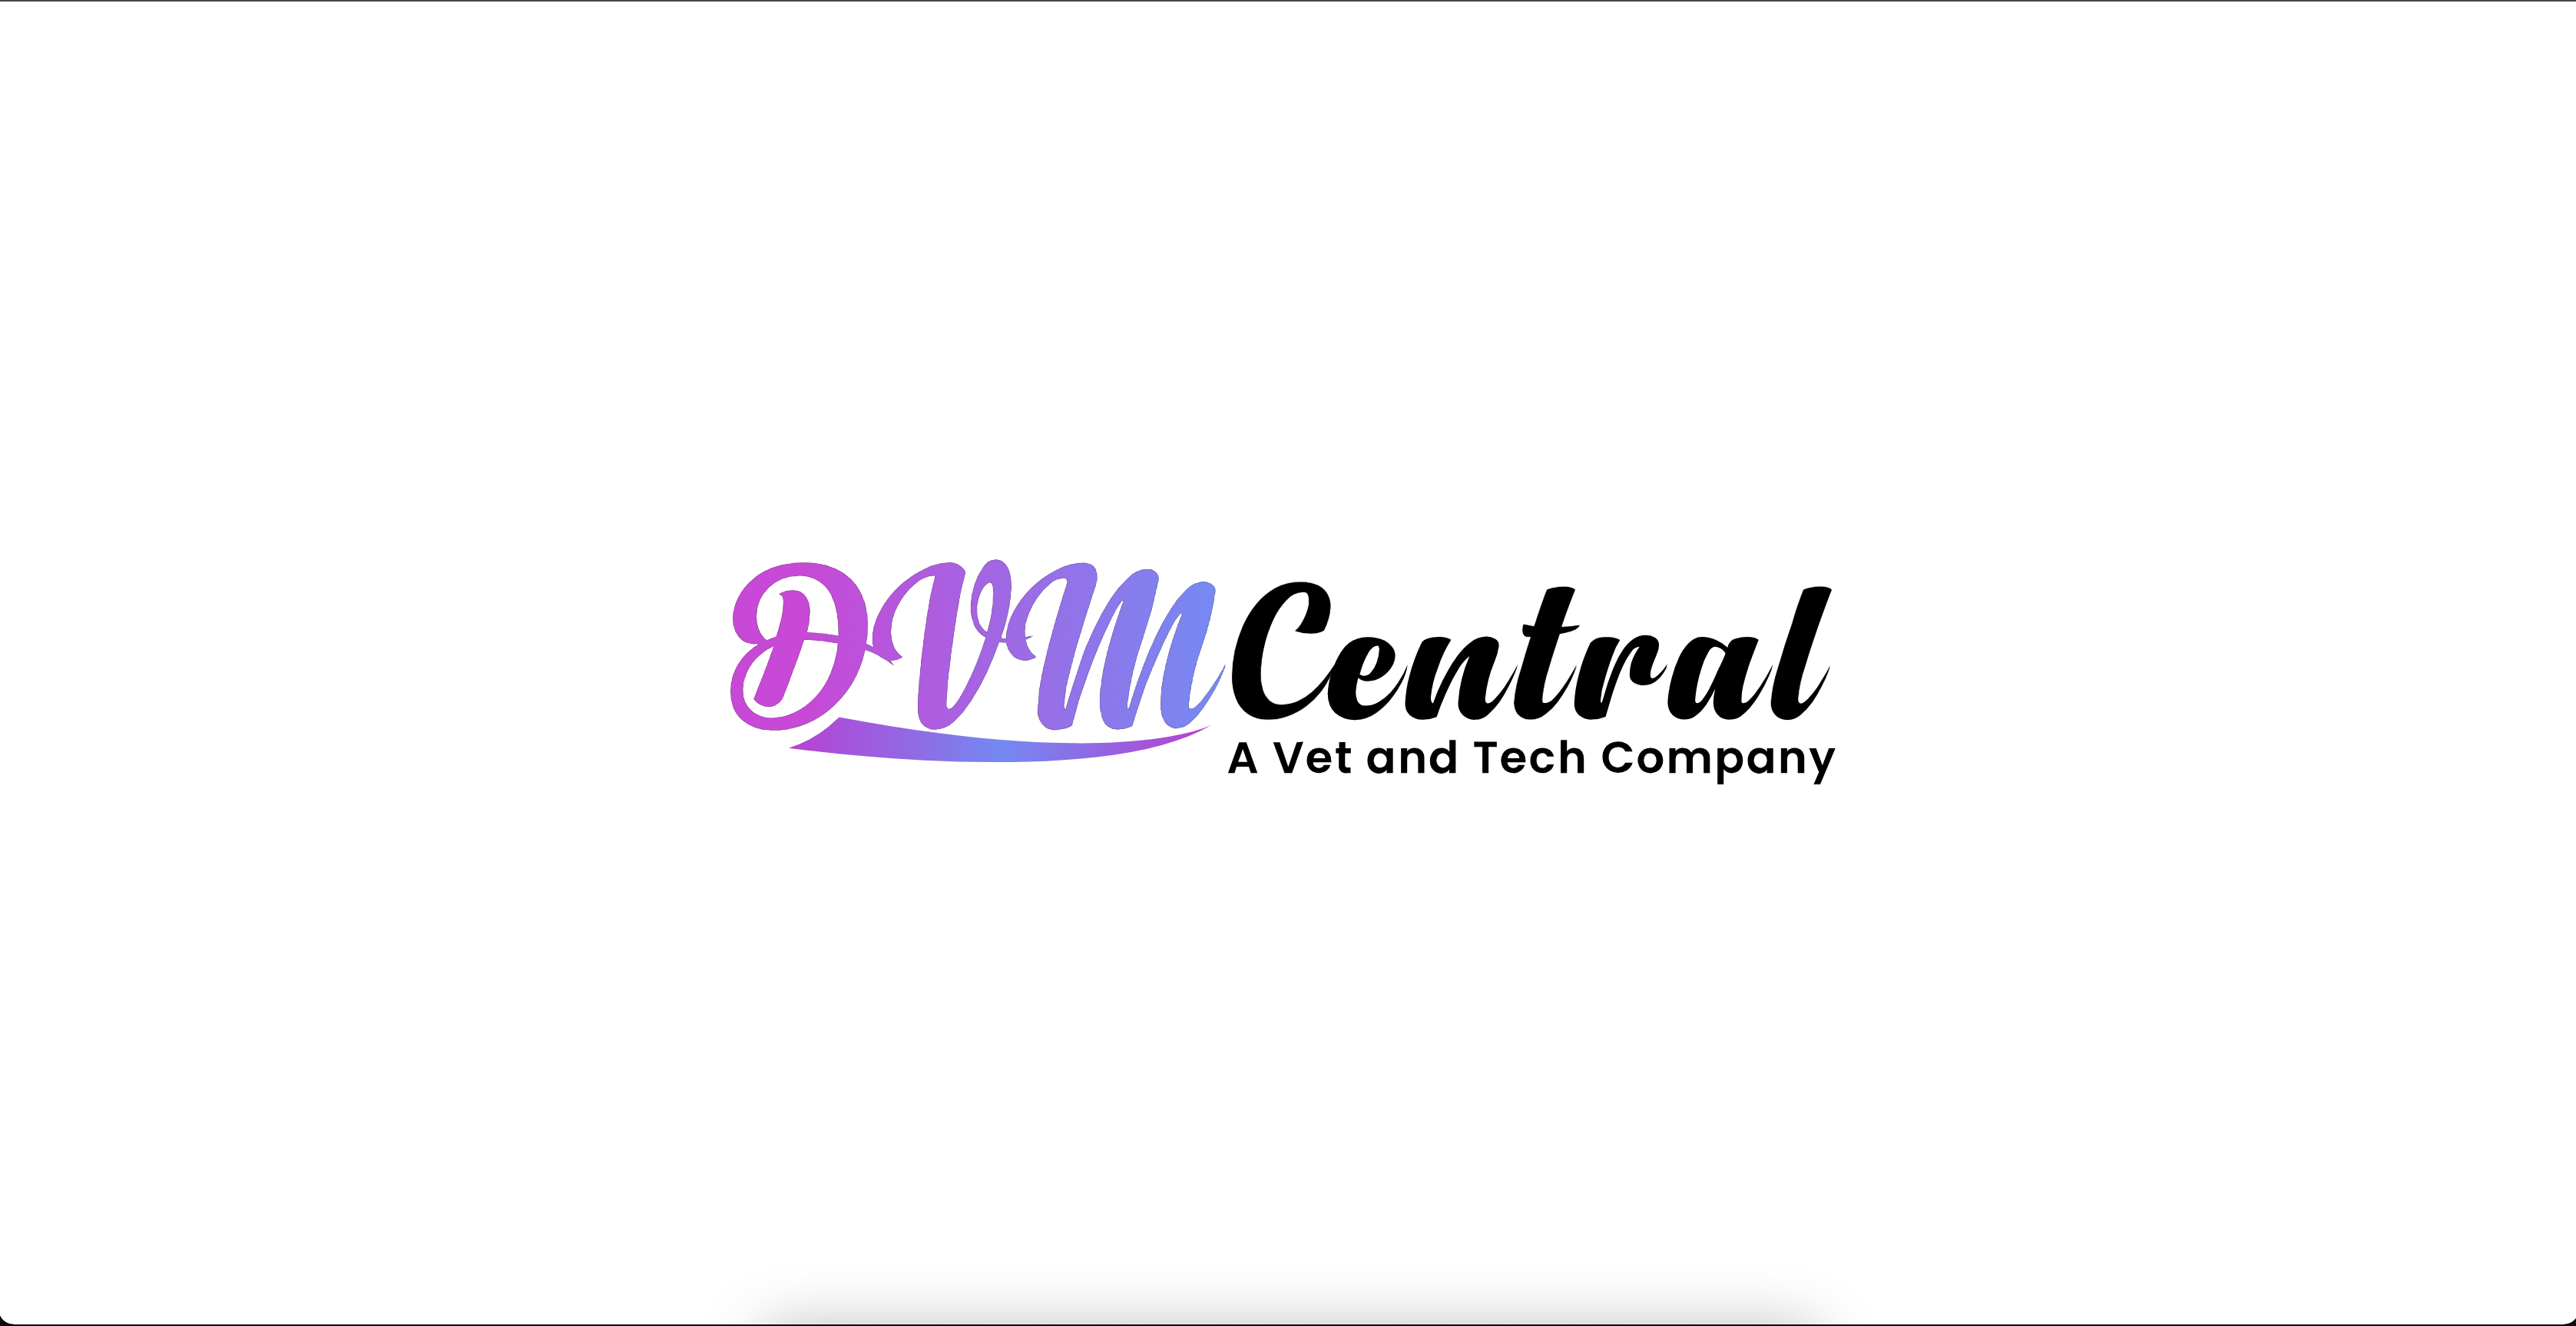 DVM Central